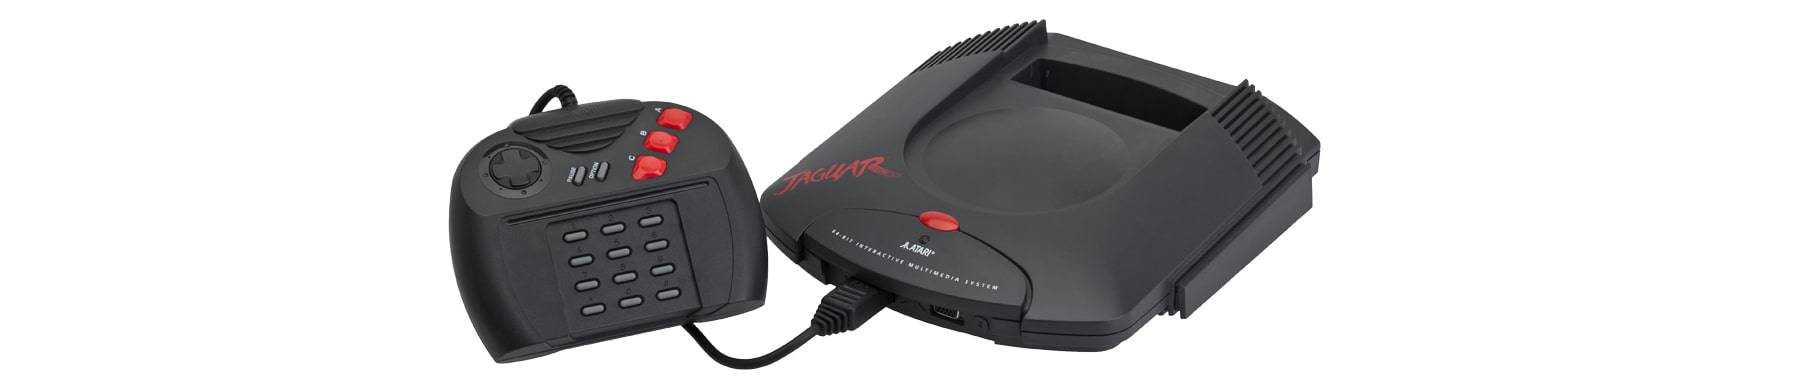 Atari's Jaguar gaming device